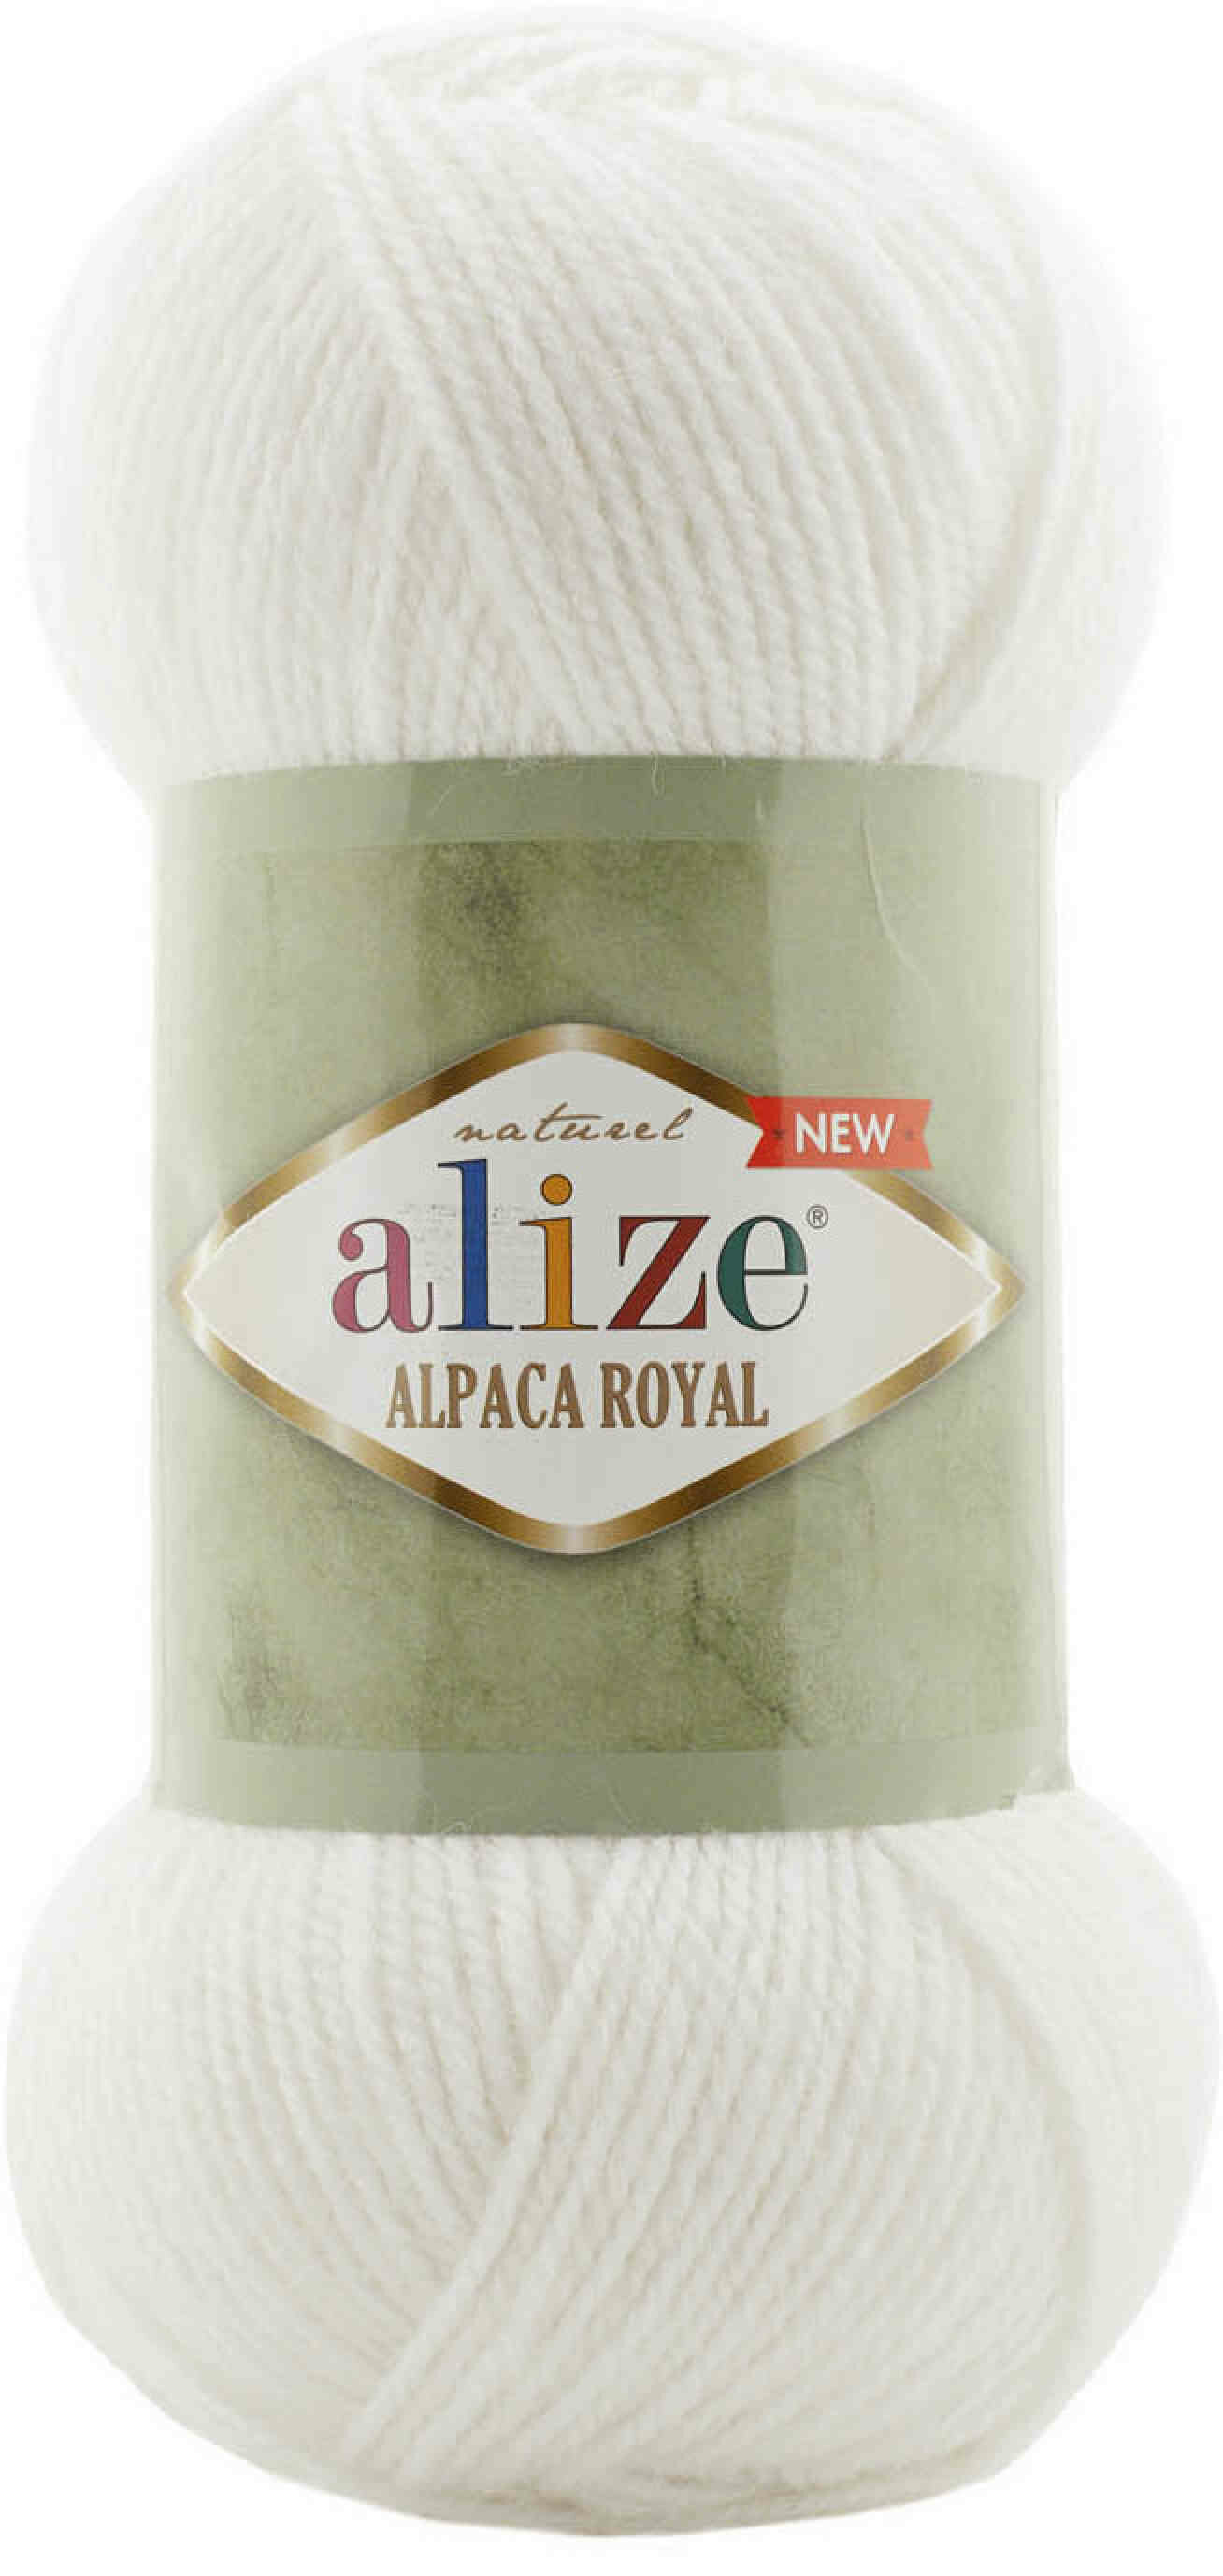 Пряжа Alize Alpaca Royal NEW белый (55), 55%акрил/30%шерсть/15%альпака, 250м, 100г, 2шт